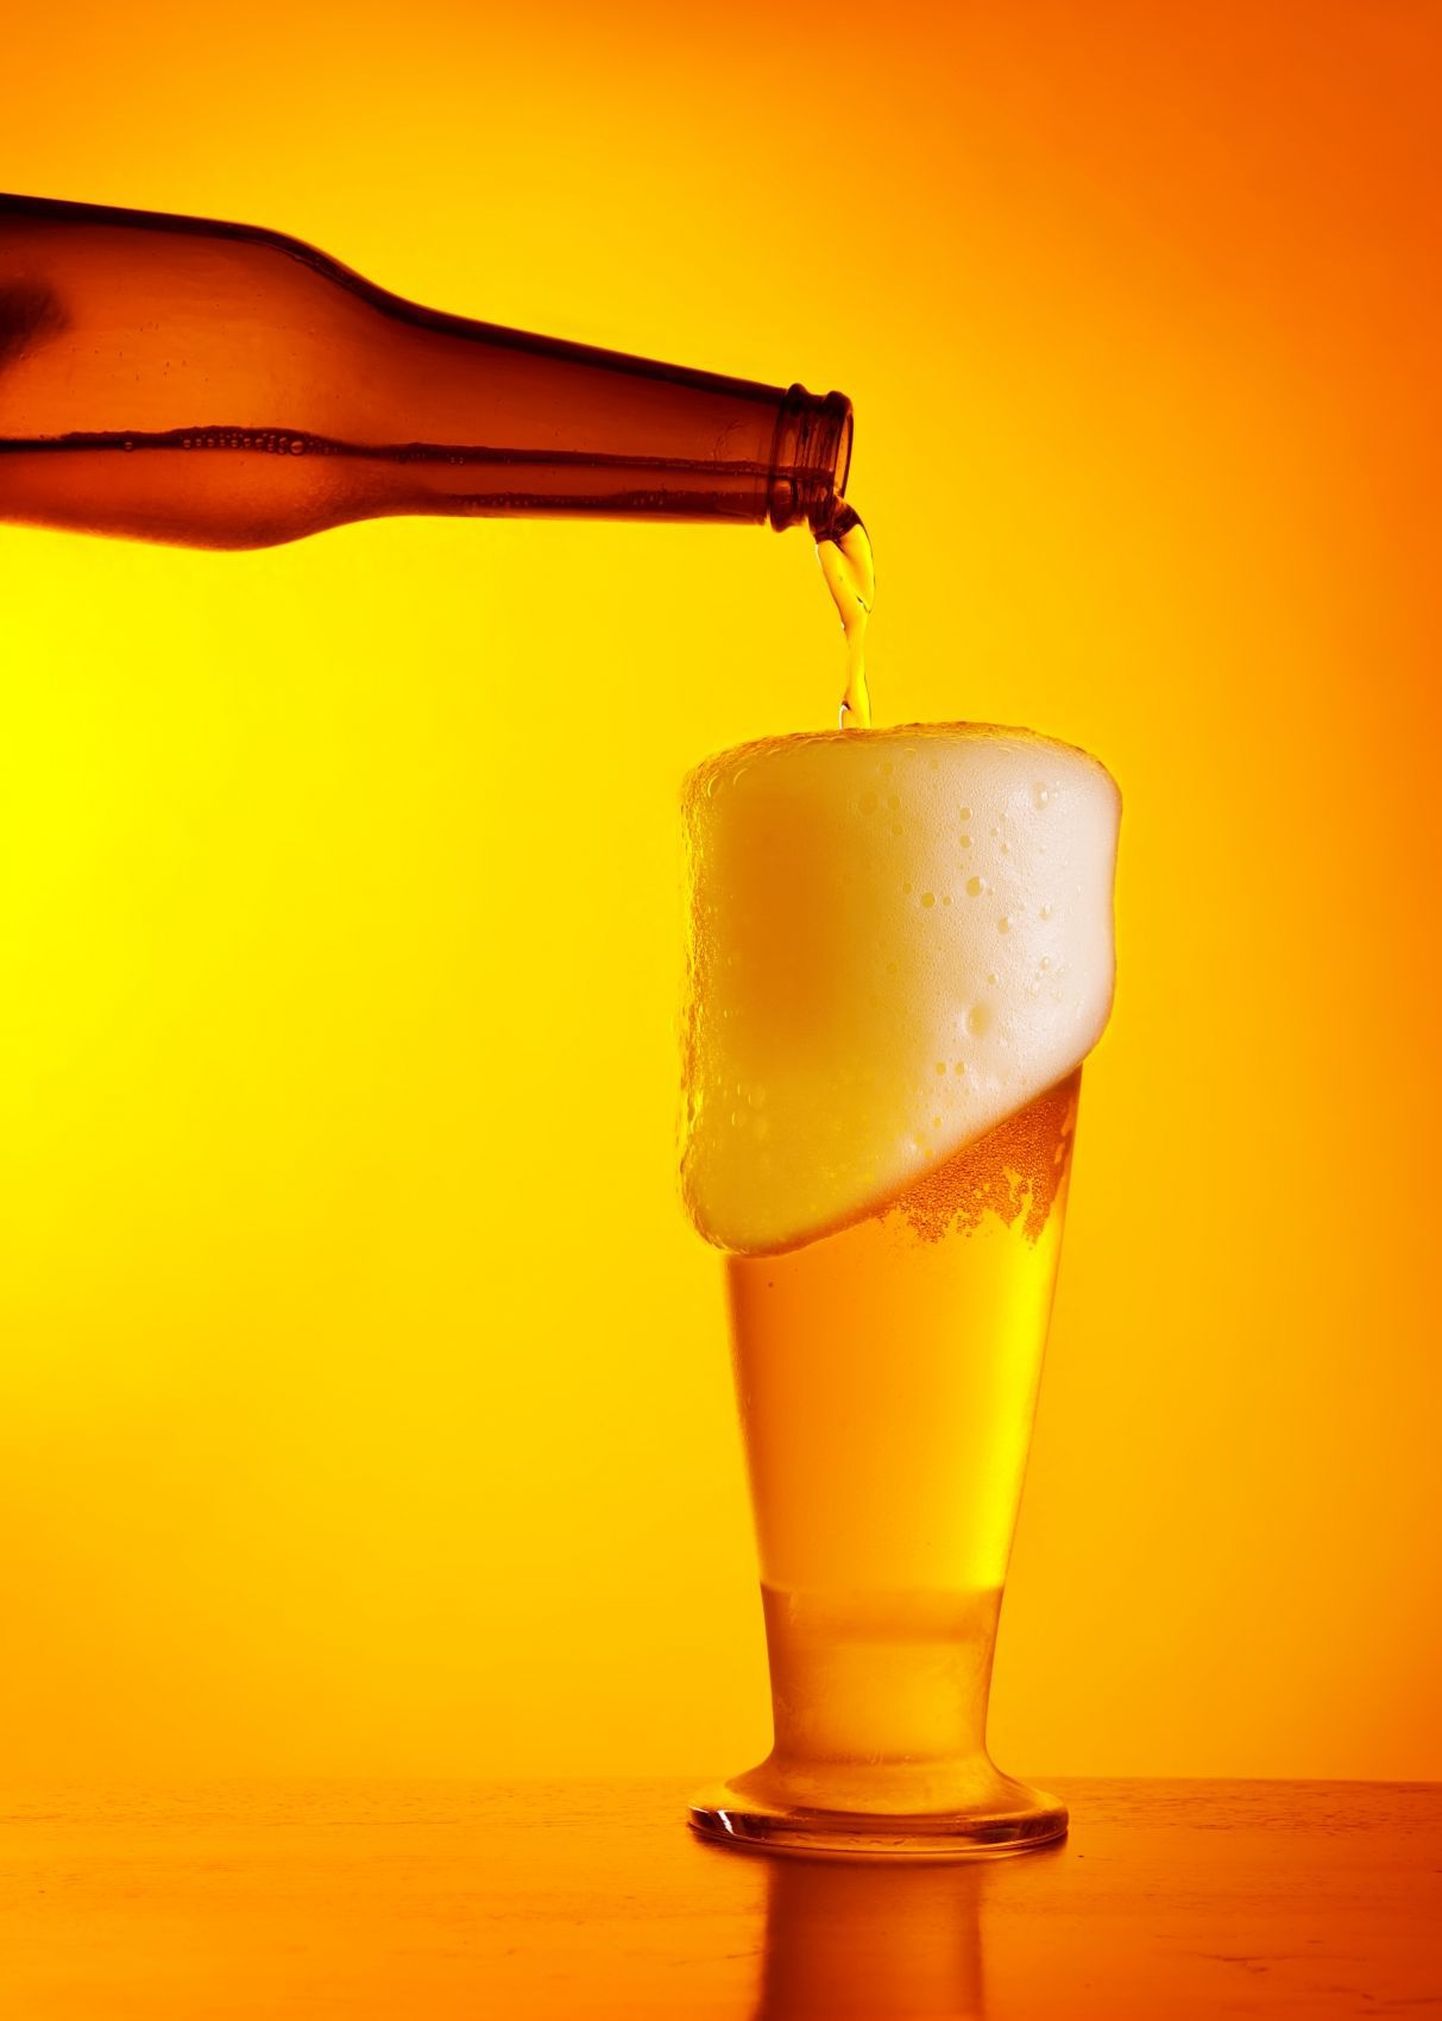 Õlle maitse käivitab ajus dopamiini tootmise